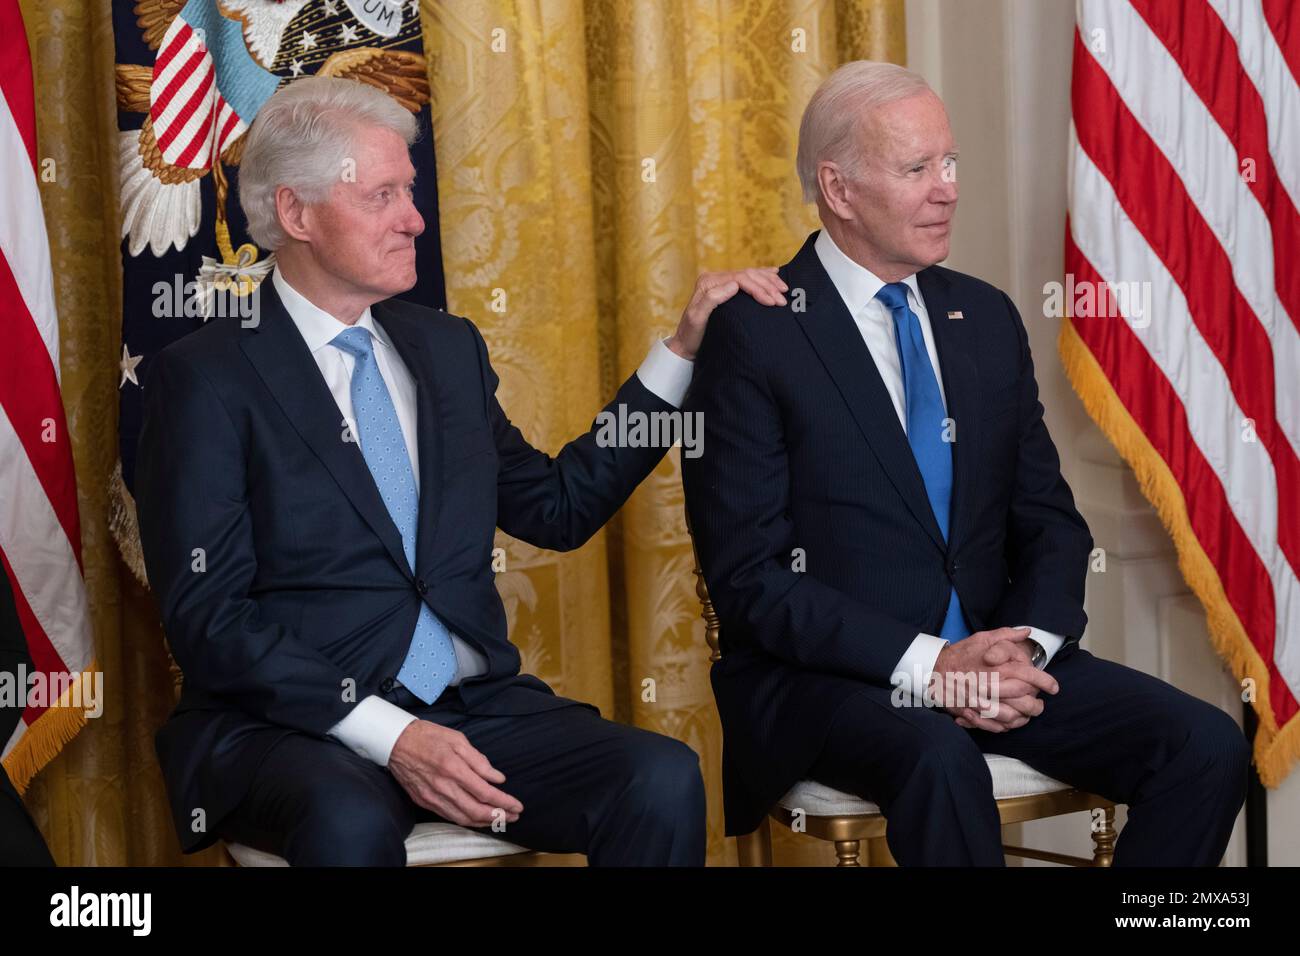 Der ehemalige US-Präsident Bill Clinton legt seine Hand auf die Schulter des US-Präsidenten Joe Biden während einer Zeremonie anlässlich des 30. Jahrestags des Family and Medical Leave Act im Weißen Haus in Washington, DC am 2. Februar 2023. Kredit: Chris Kleponis/CNP/MediaPunch Stockfoto